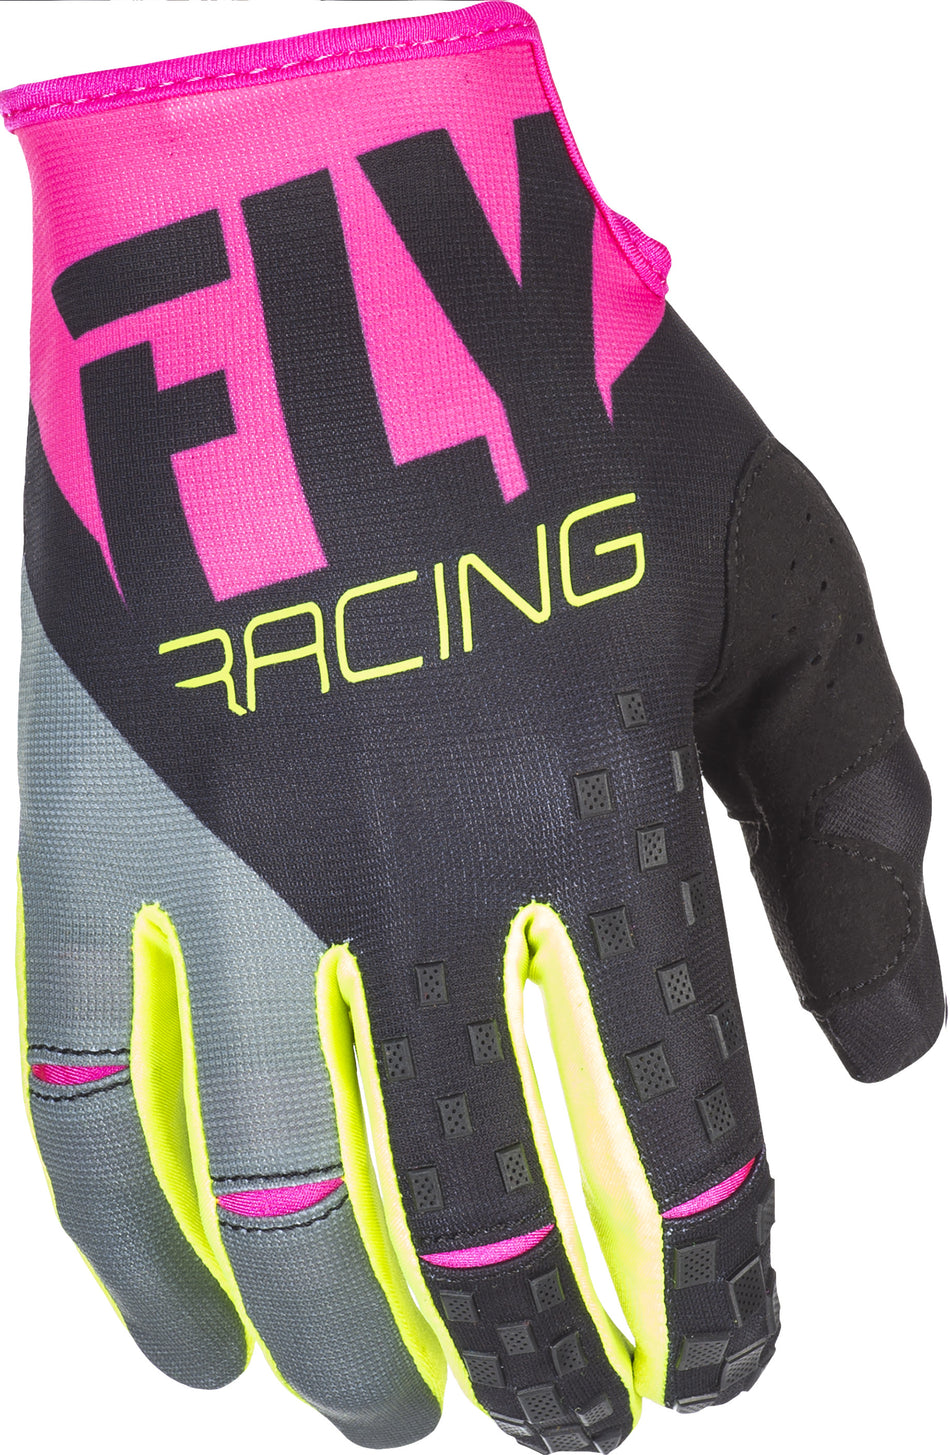 FLY RACING Kinetic Gloves Neon Pink/Black/Hi-Vis Sz 7 371-41907